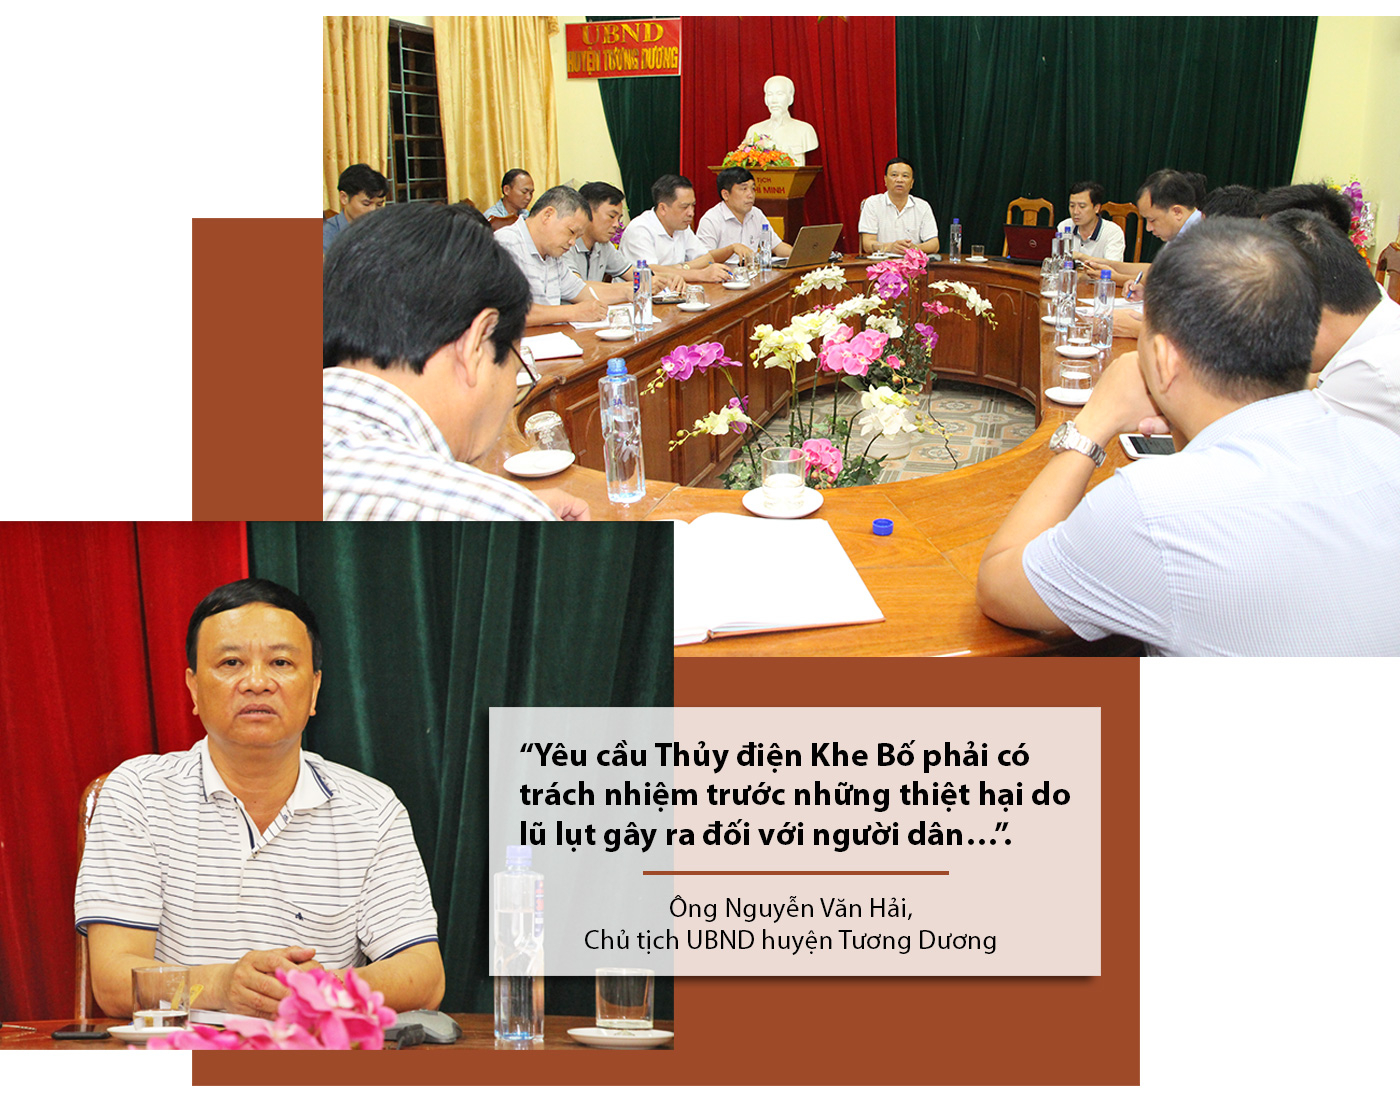 Cuộc họp giữa UBND huyện Tương Dương và công ty thủy điện Khe Bố trong tối ngày 5/5/2018.